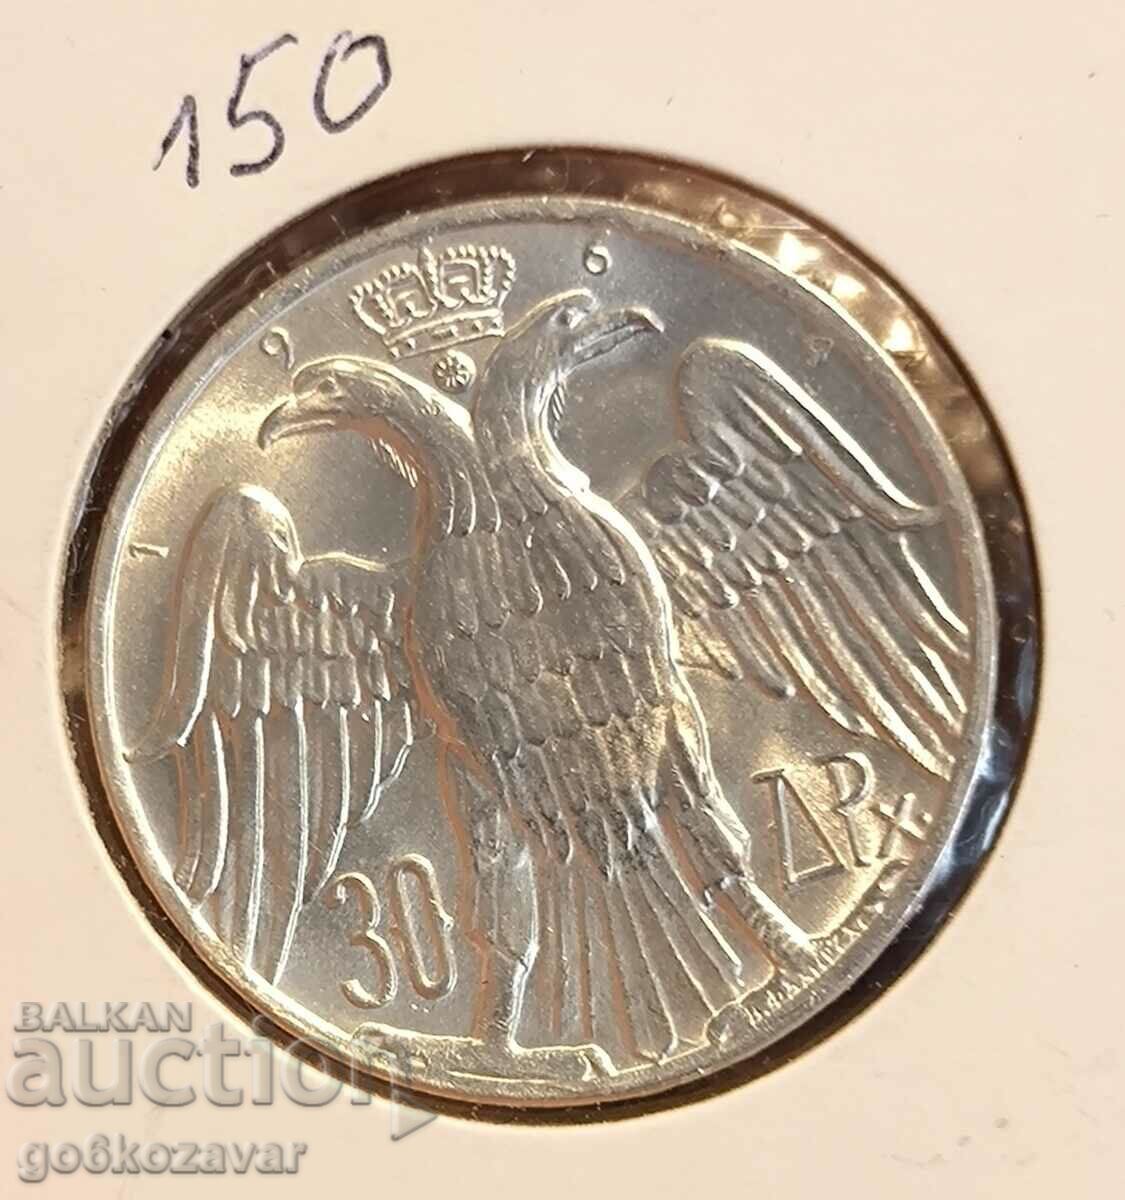 Greece 30 drachmas 1964 Silver UNC !